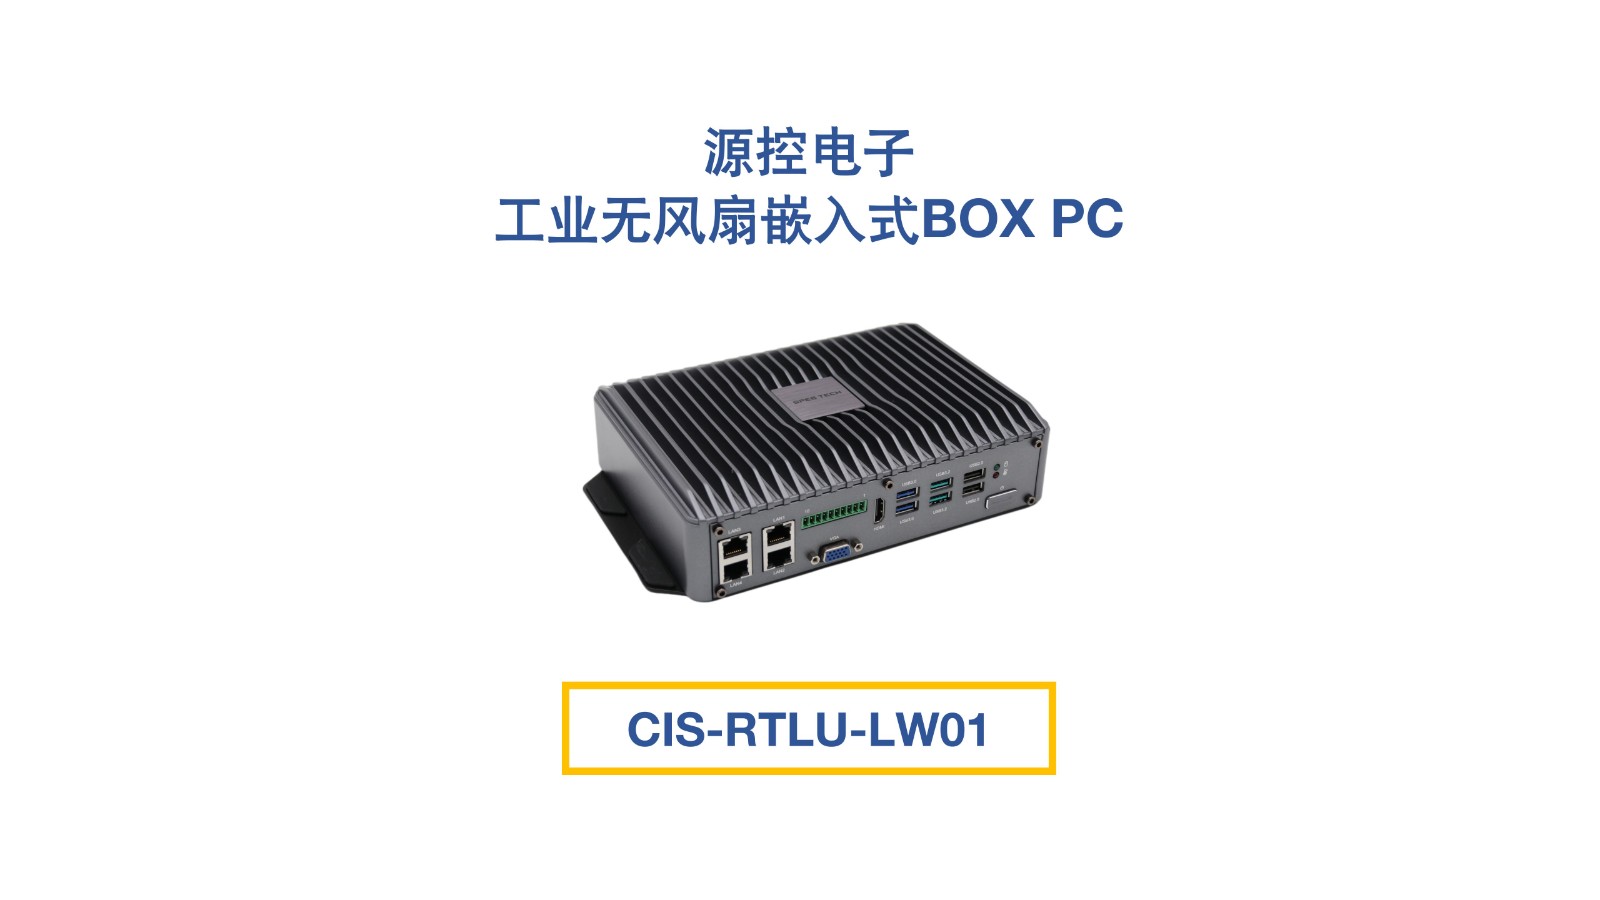 工業無風扇嵌入式BOX PC：CIS-RTLU-LW01